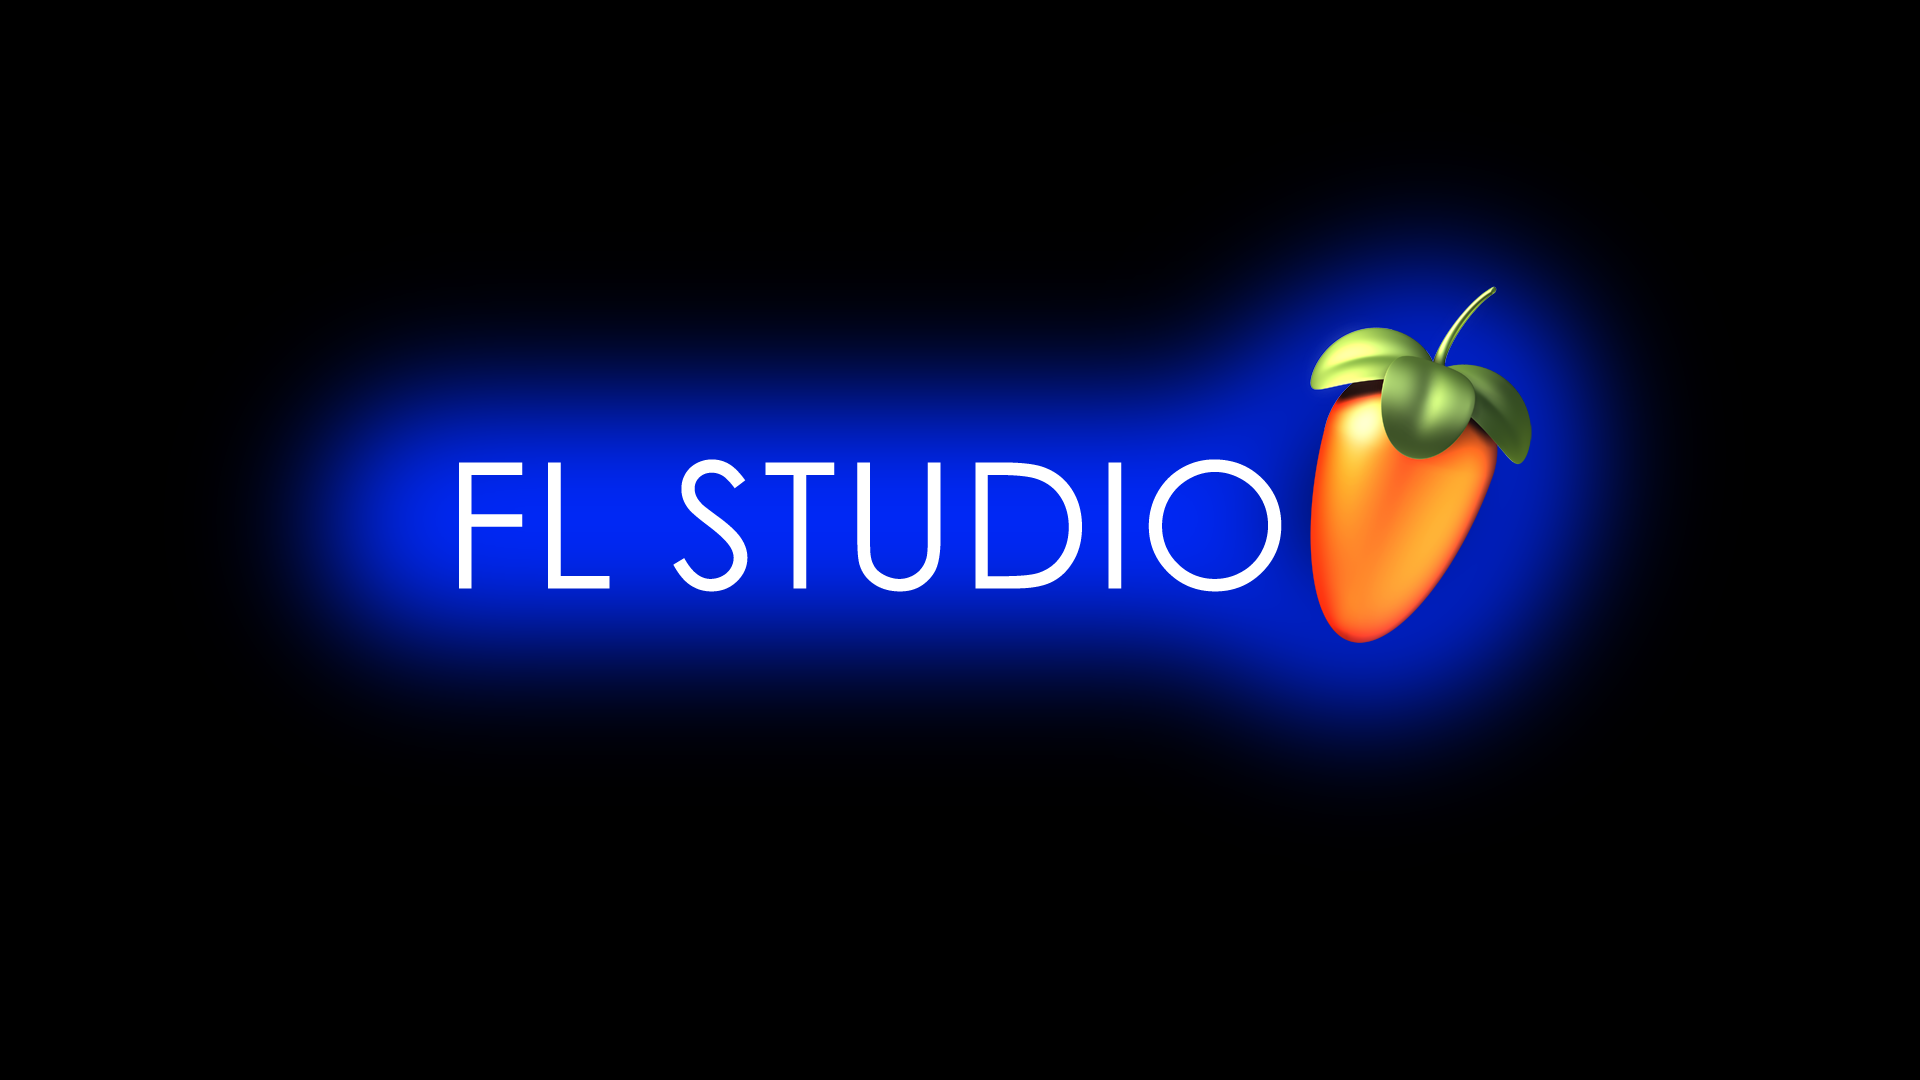 FL Studio Glow Blue by Ozicks on